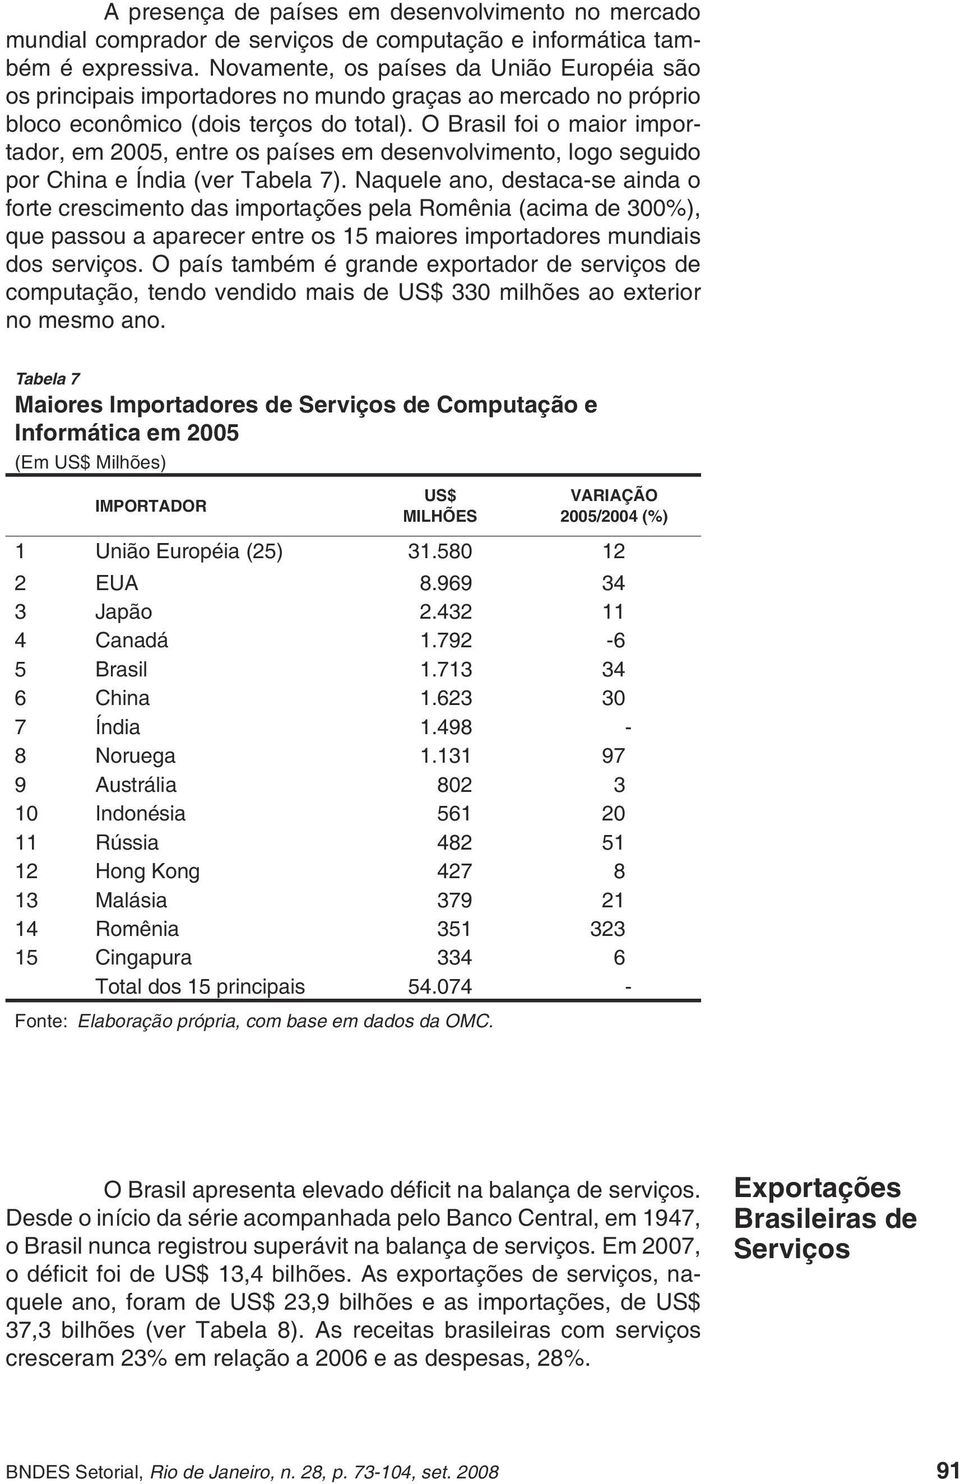 O Brasil foi o maior importador, em 2005, entre os países em desenvolvimento, logo seguido por China e Índia (ver Tabela 7).